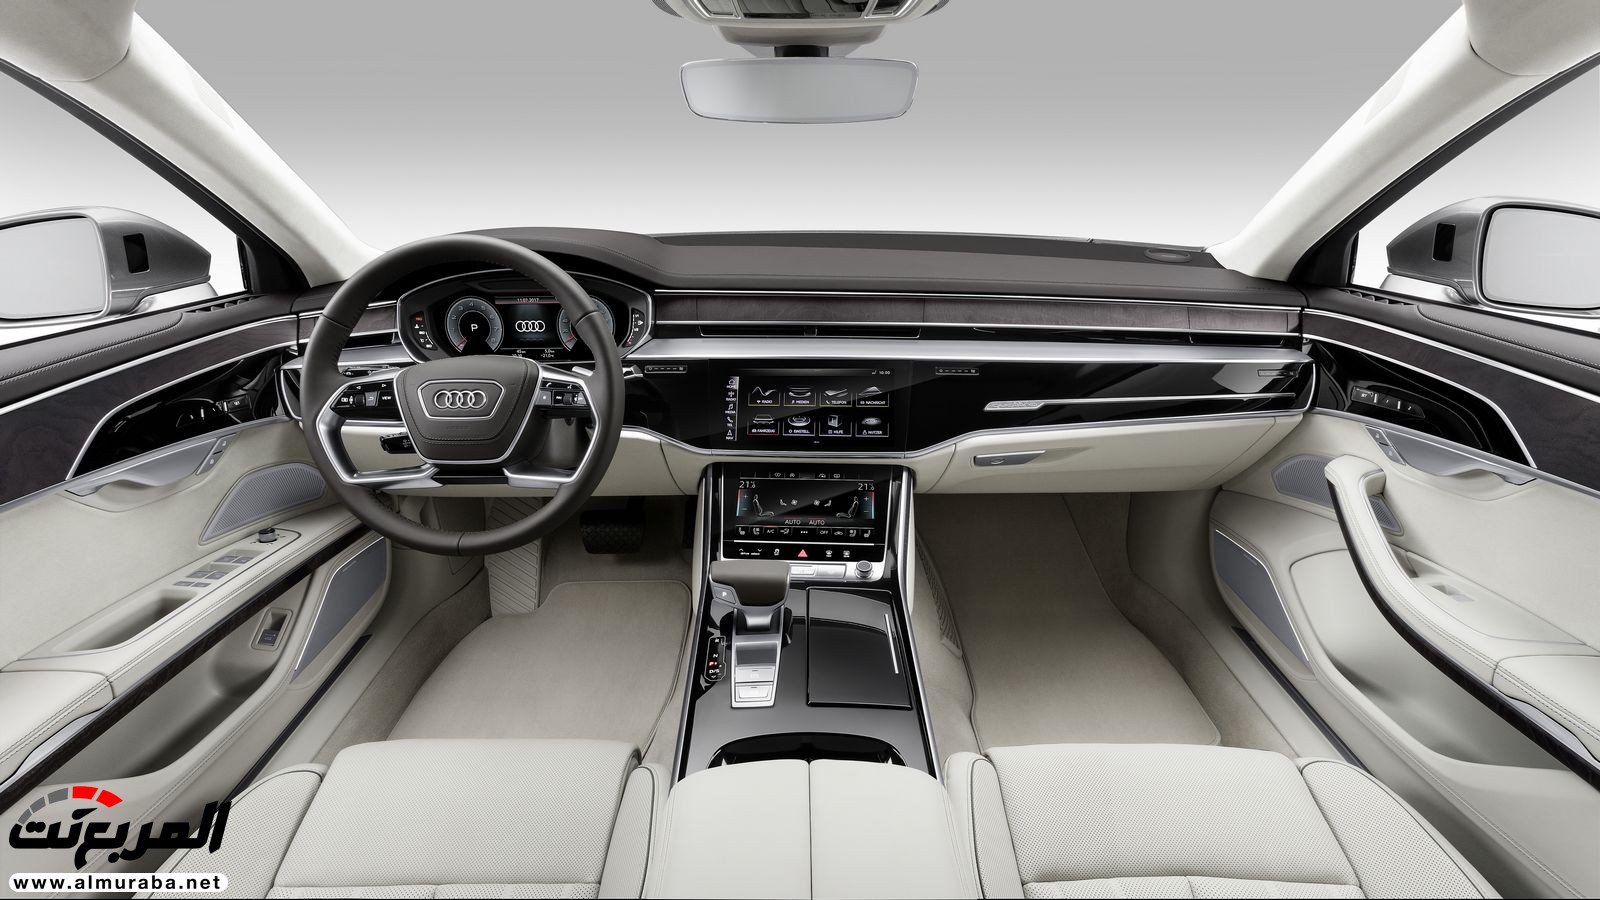 أودي A8 2018 الجديدة كلياً تكشف نفسها بتصميم وتقنيات متطورة "معلومات + 100 صورة" Audi A8 27